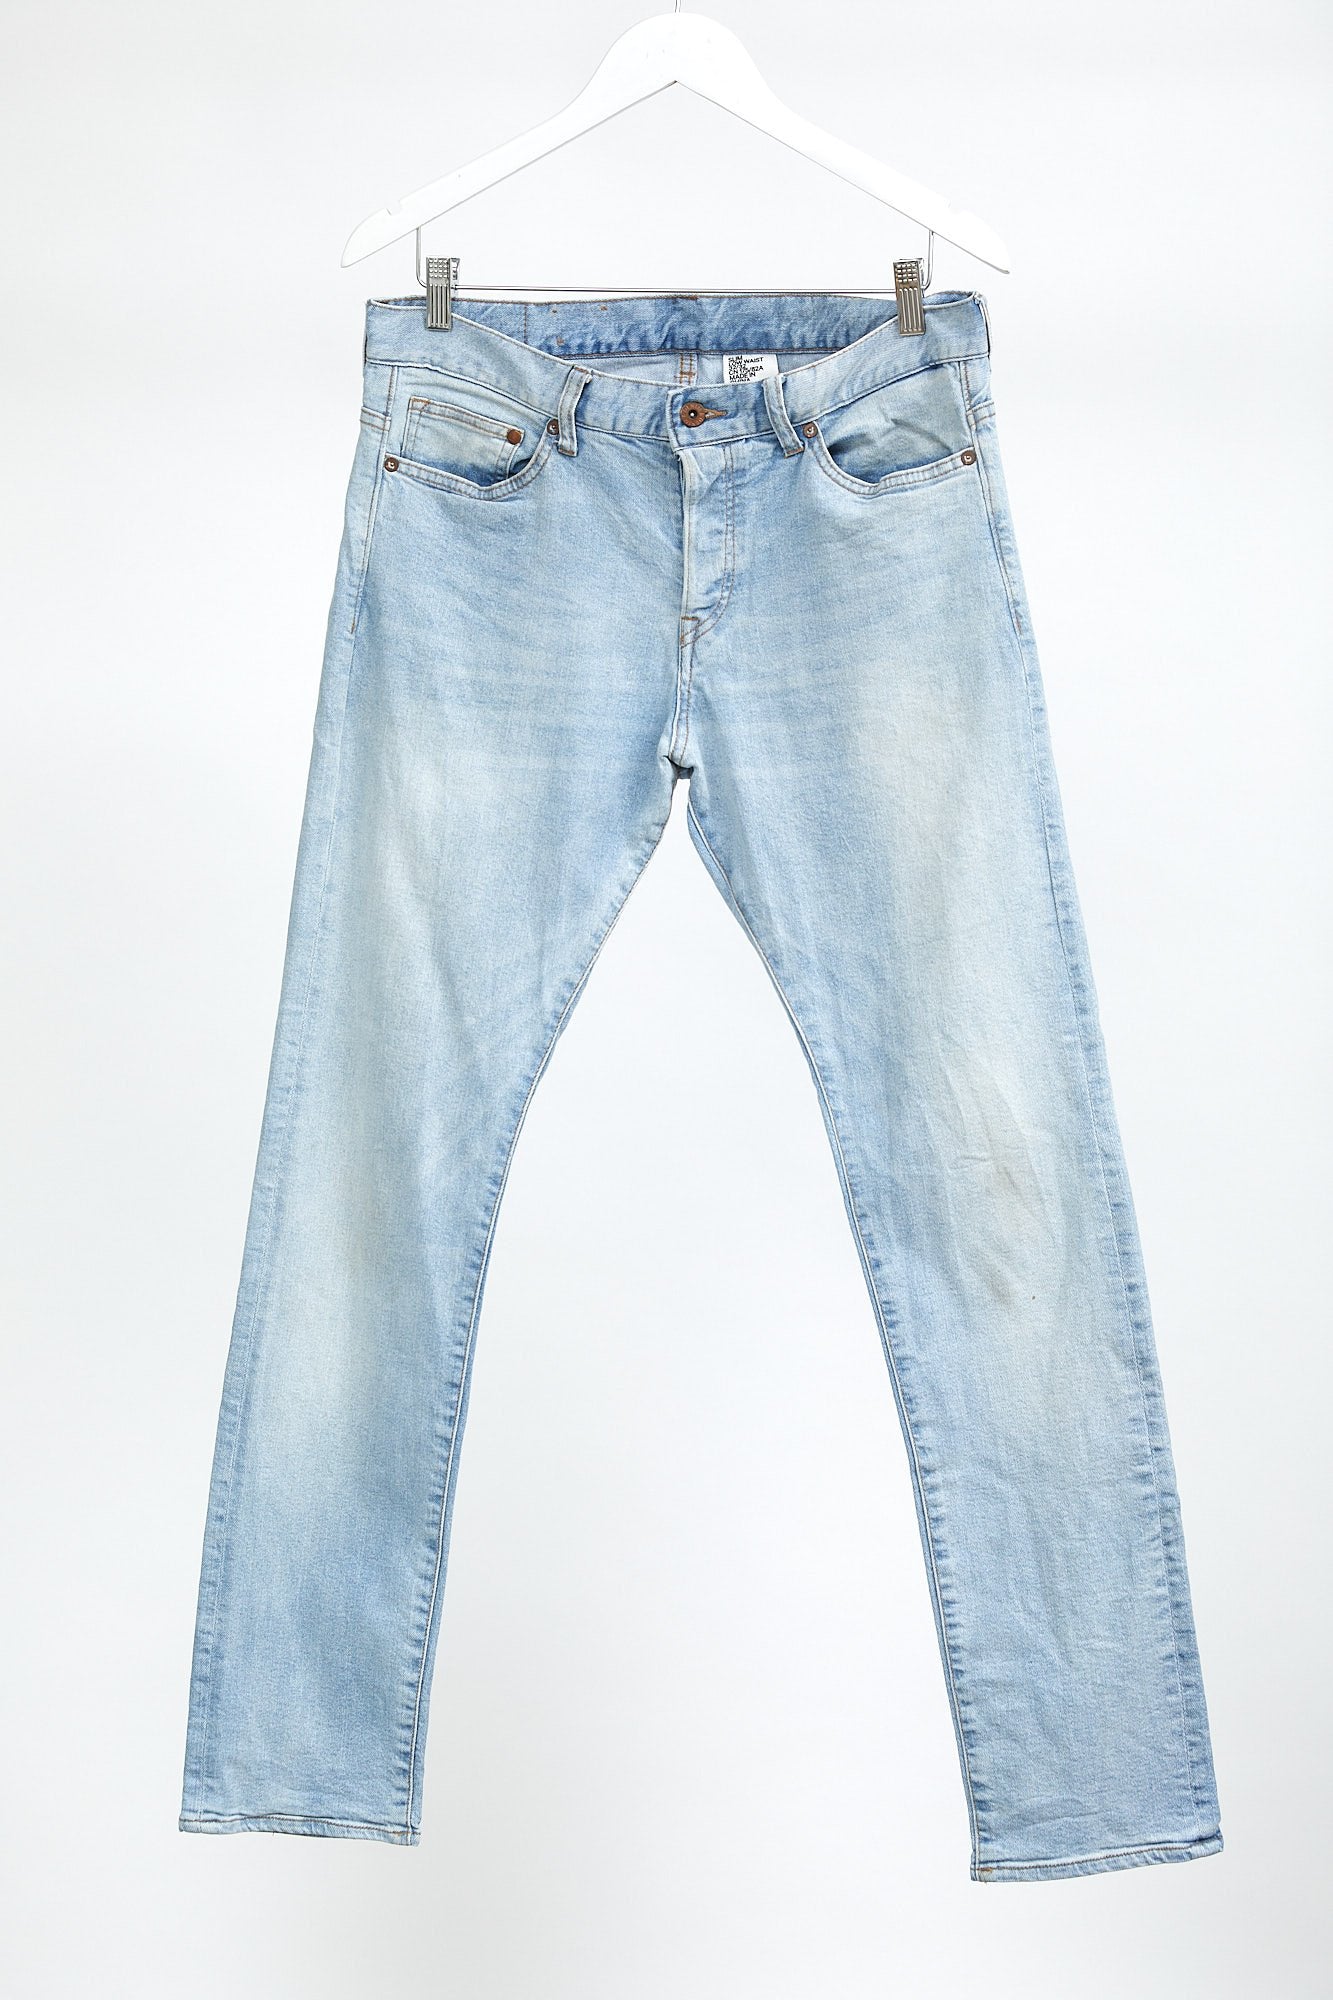 H&M Light Blue Straight Slim Fit Jean: W32 L32